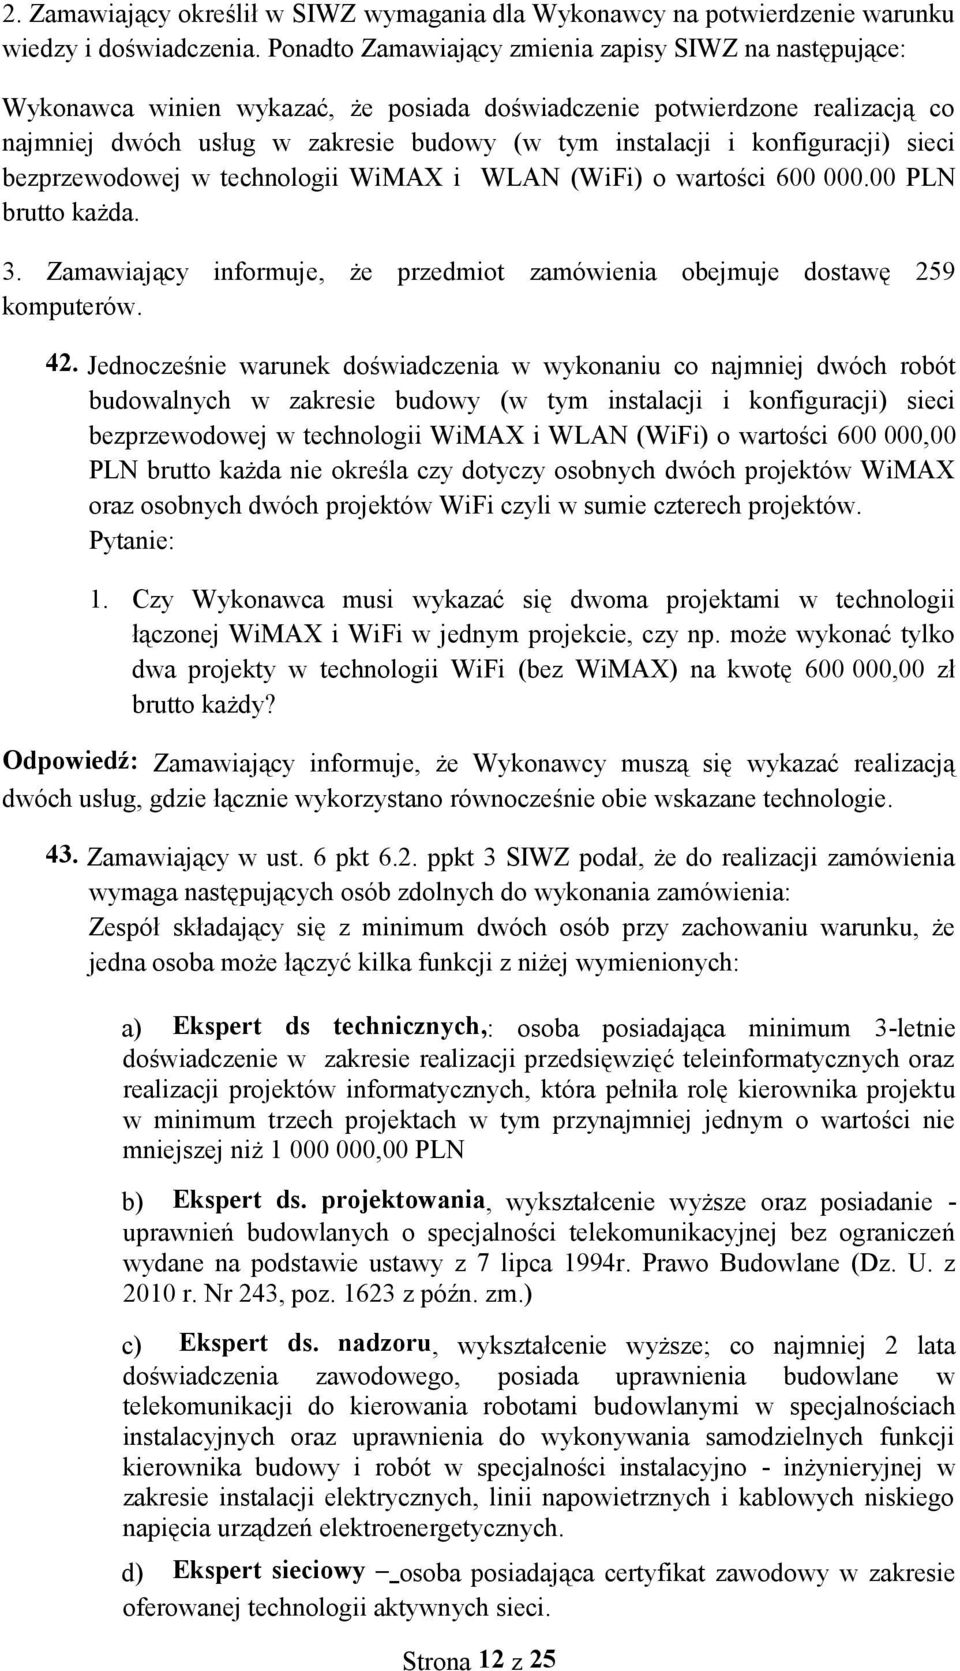 konfiguracji) sieci bezprzewodowej w technologii WiMAX i WLAN (WiFi) o wartości 600 000.00 PLN brutto każda. 3. Zamawiający informuje, że przedmiot zamówienia obejmuje dostawę 259 komputerów. 42.